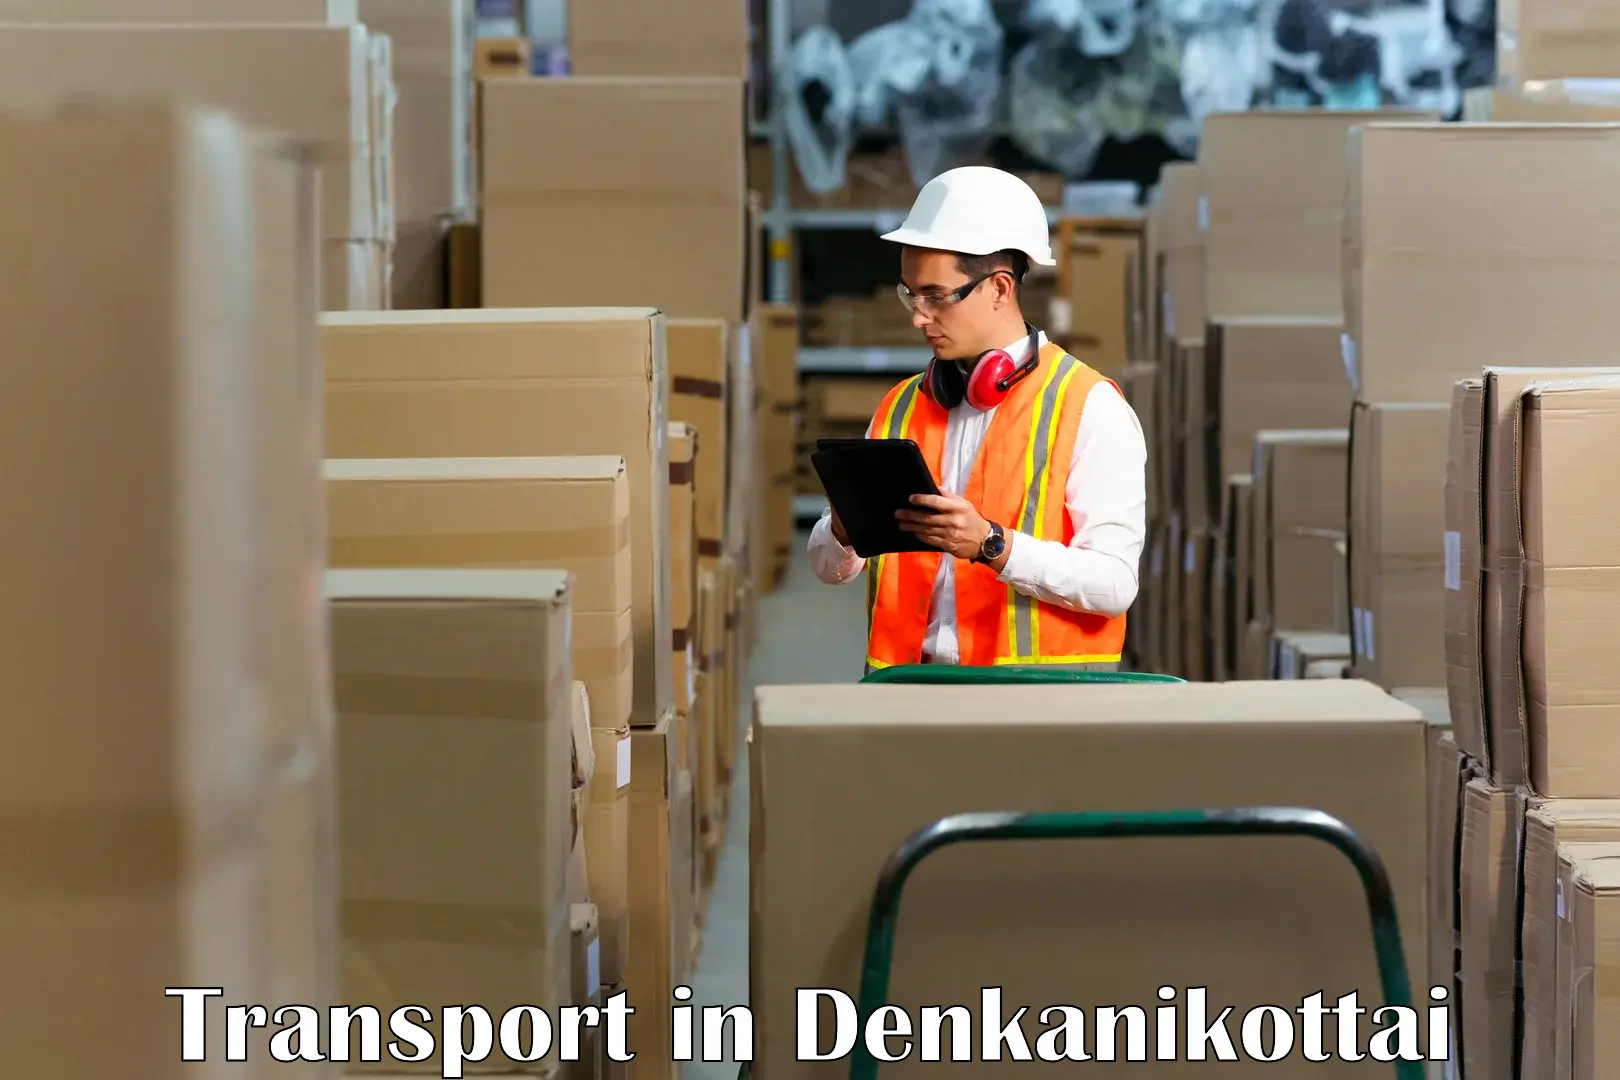 Parcel transport services in Denkanikottai